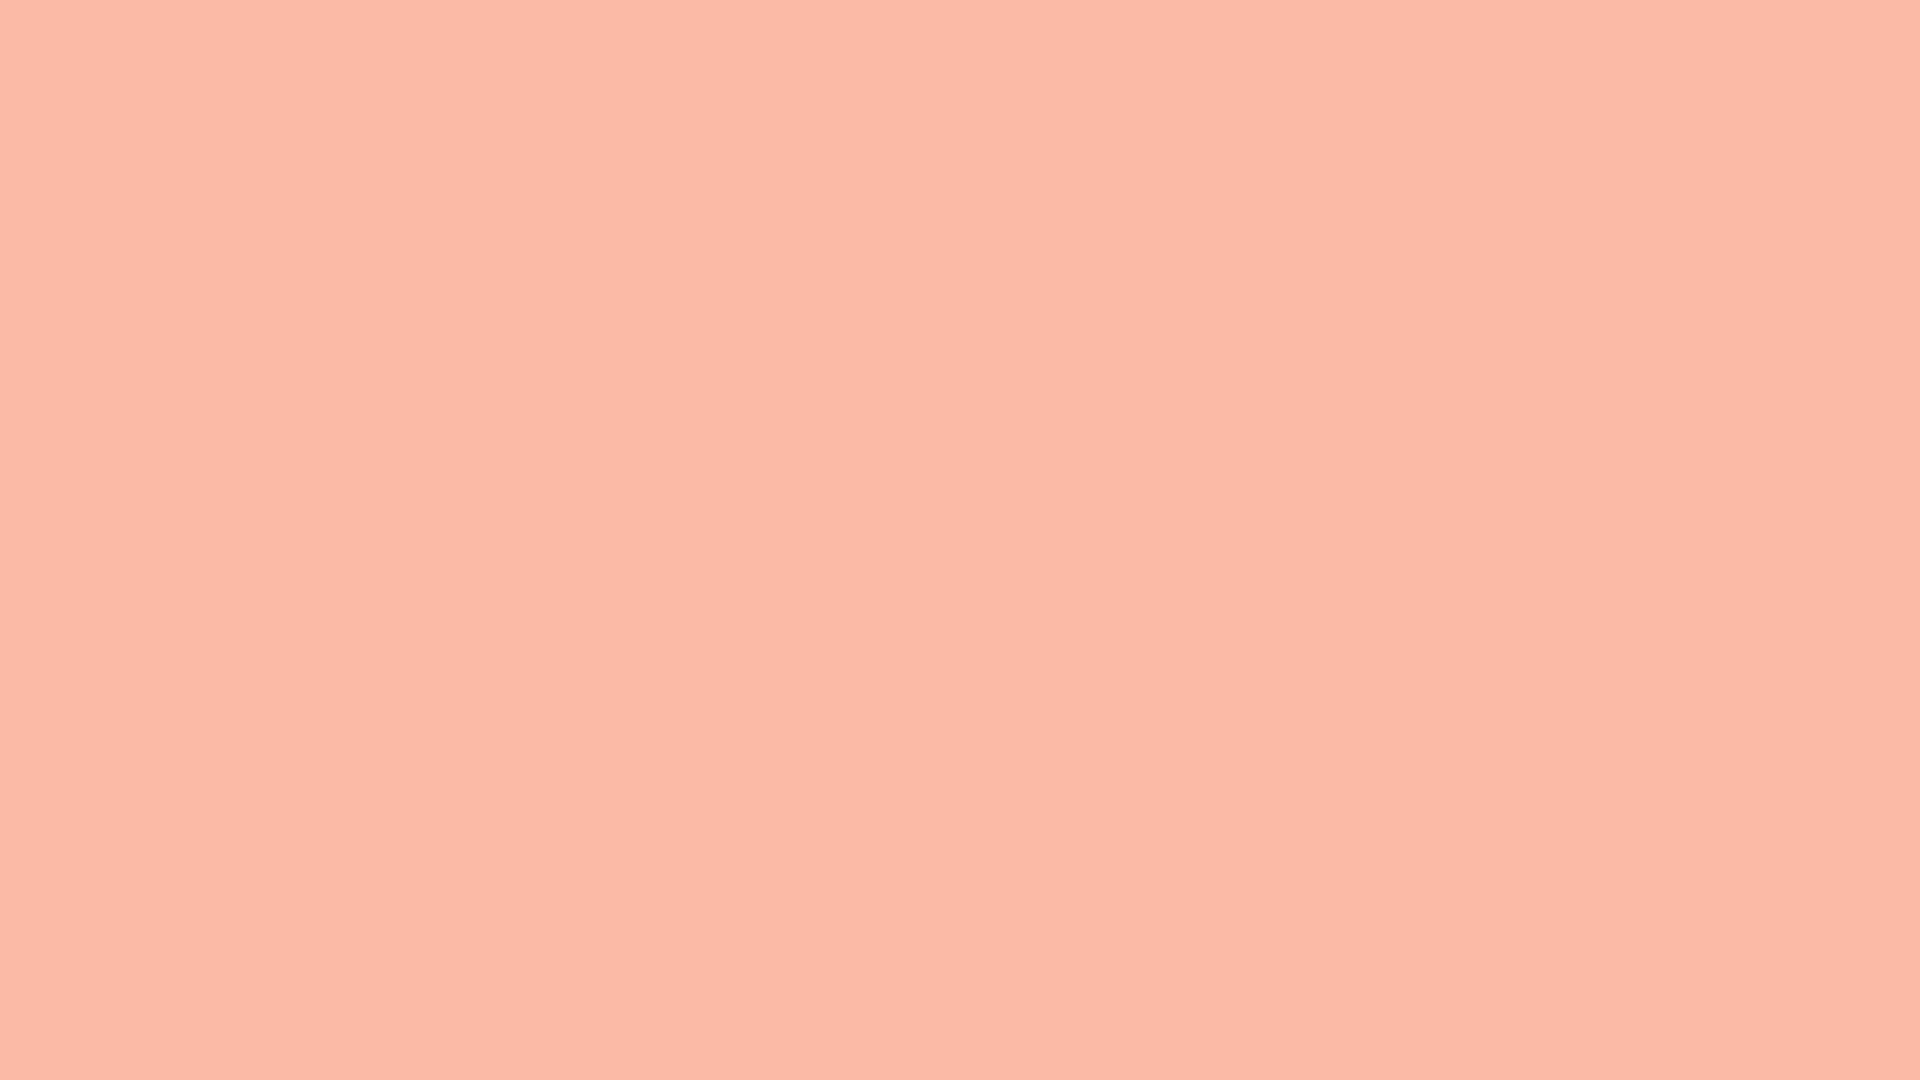 Seohelles Pink Als Feste Hintergrundfarbe.